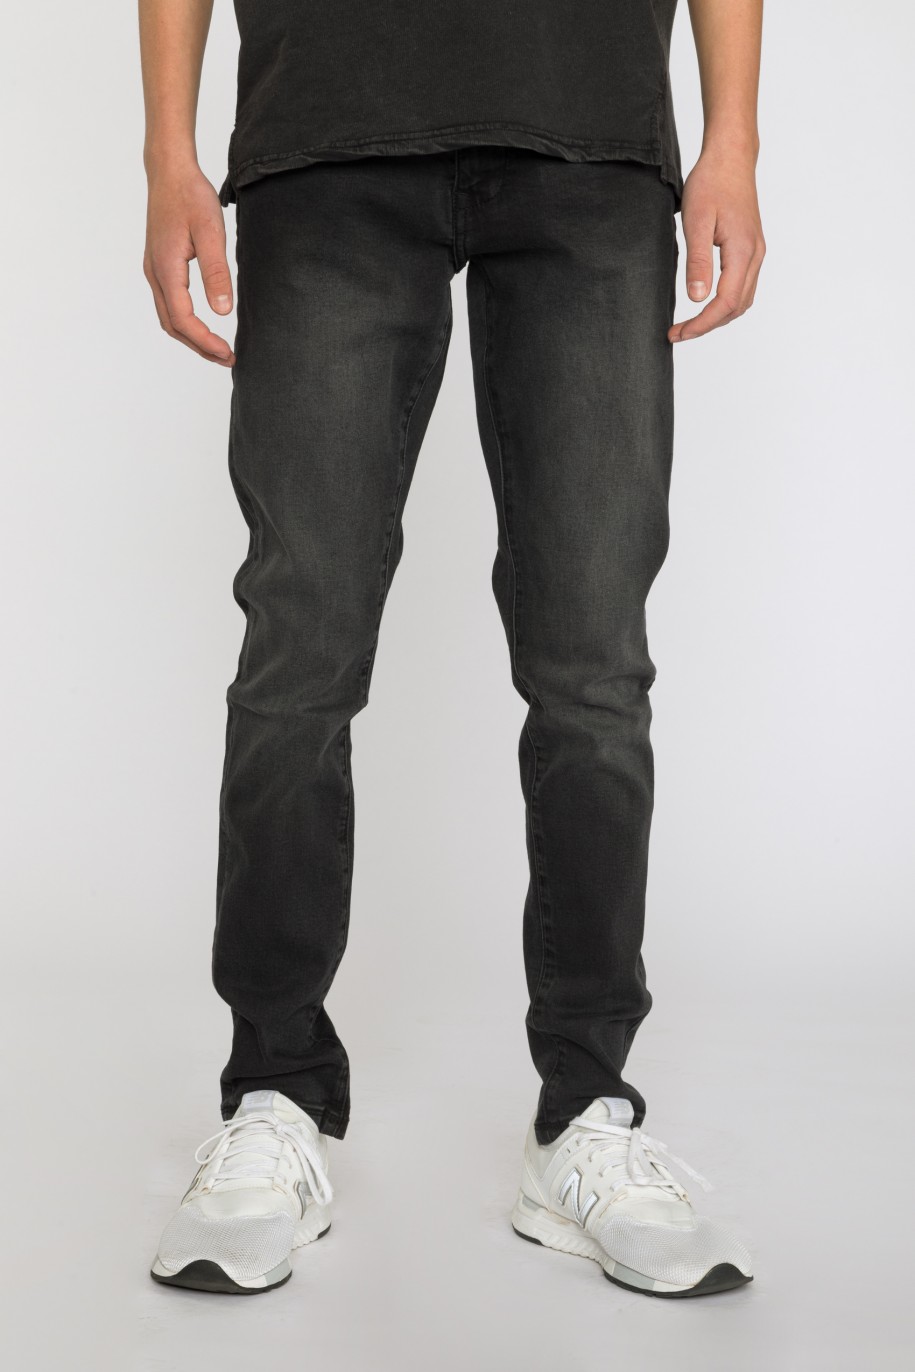 Czarne proste jeansowe spodnie dla chłopaka - 33447